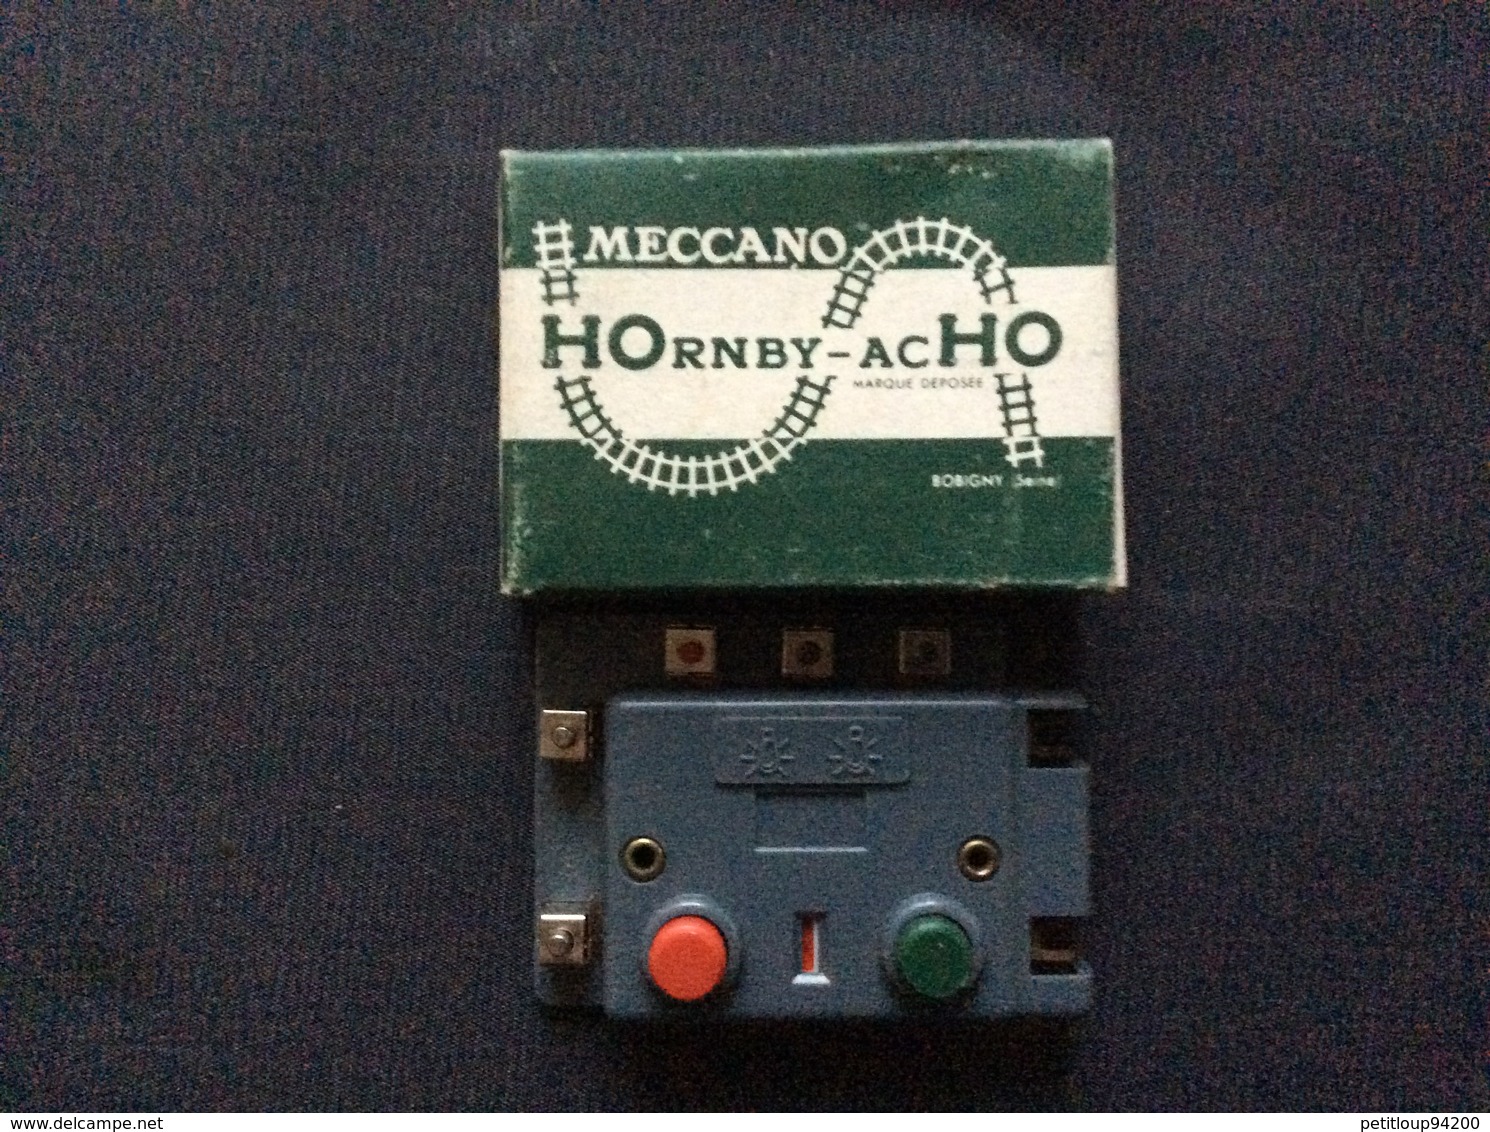 HORNBY-acHO MECCANO-TRIANG 1 Boîtier De Commande A Contact Permanent  Ref. 7840 - Commandes & Accessoires Digitaux